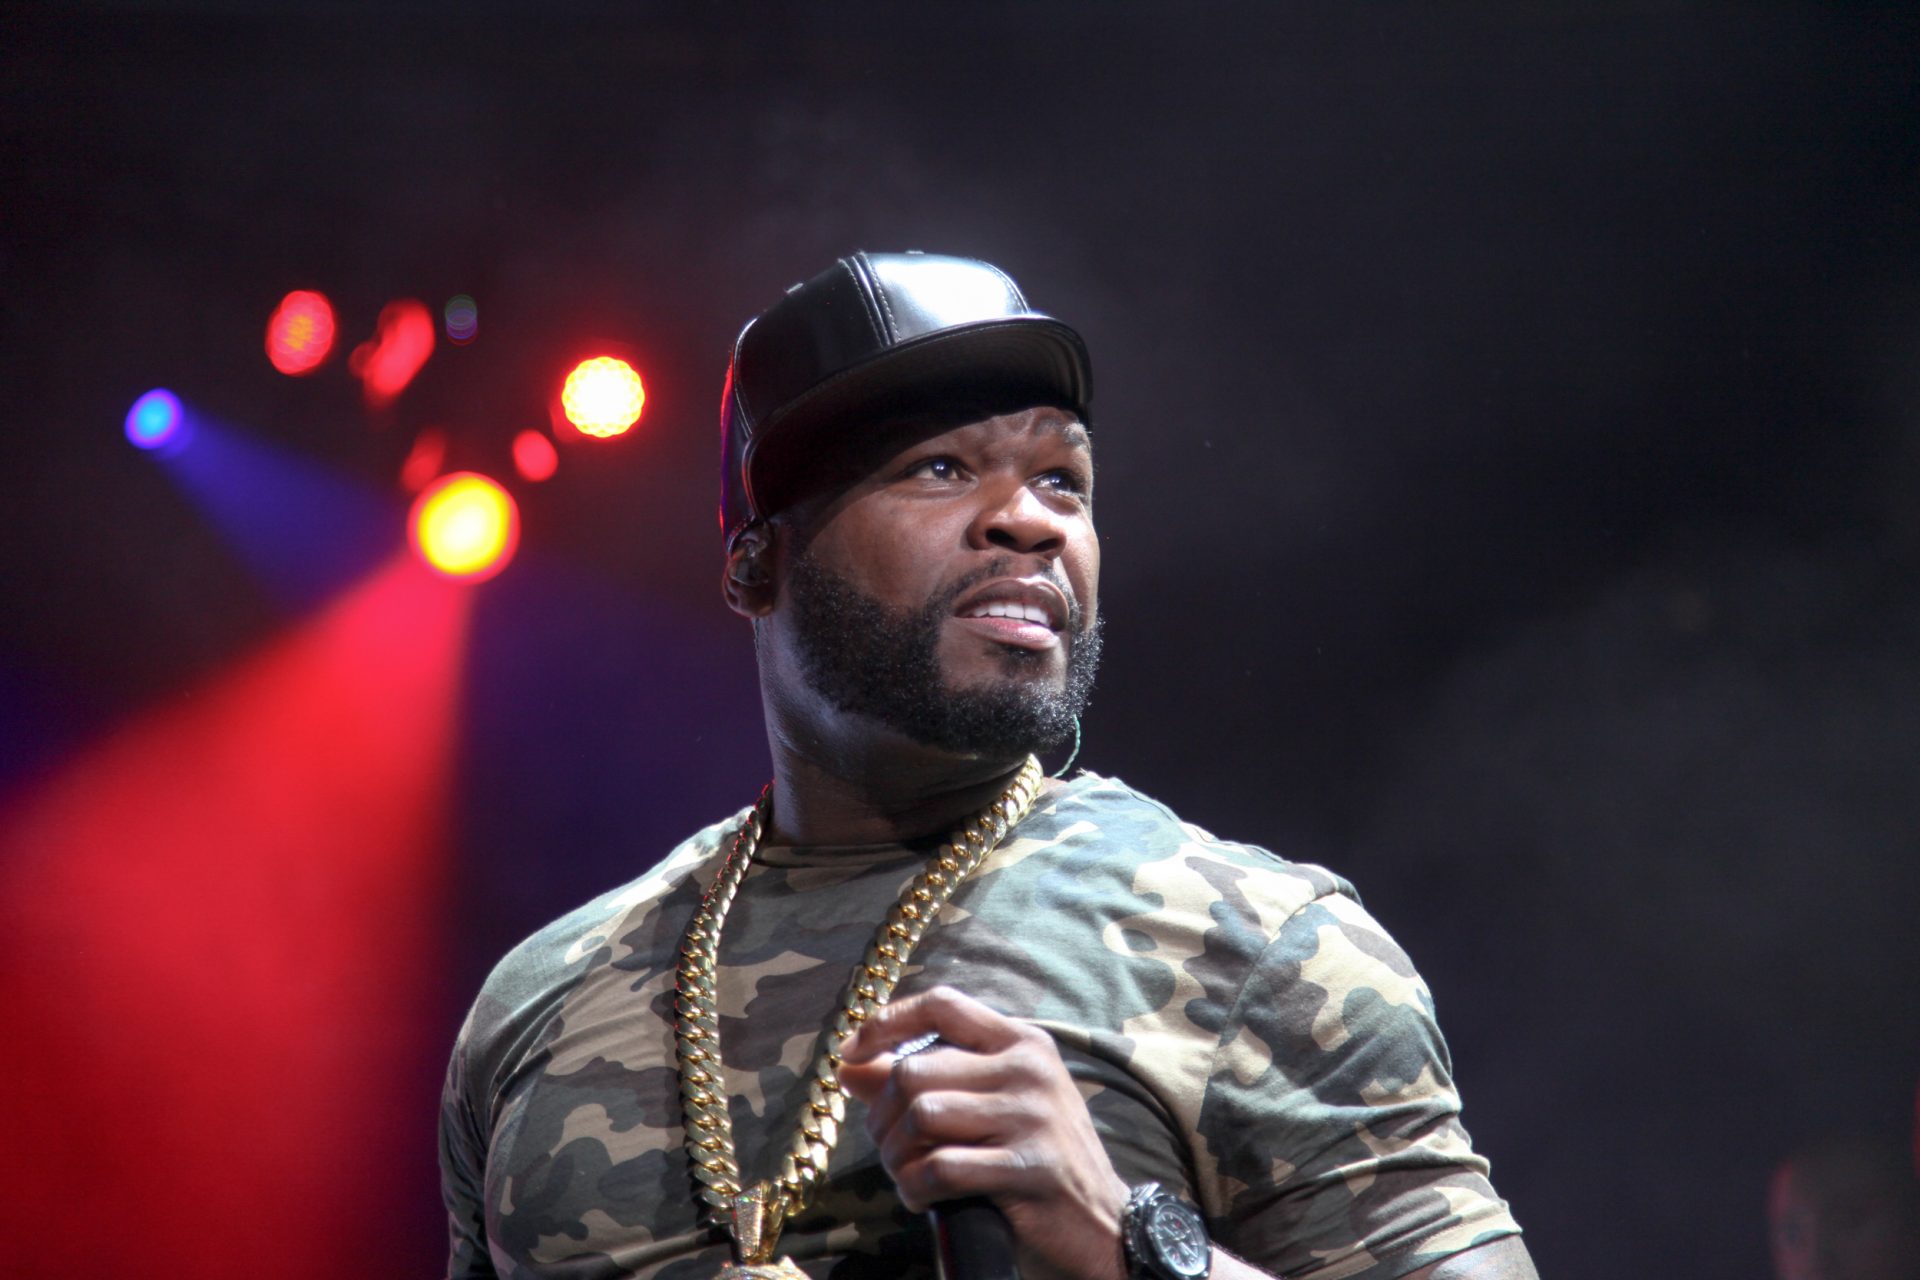 Série em que participa 50 Cent fora dos Globos de Ouro